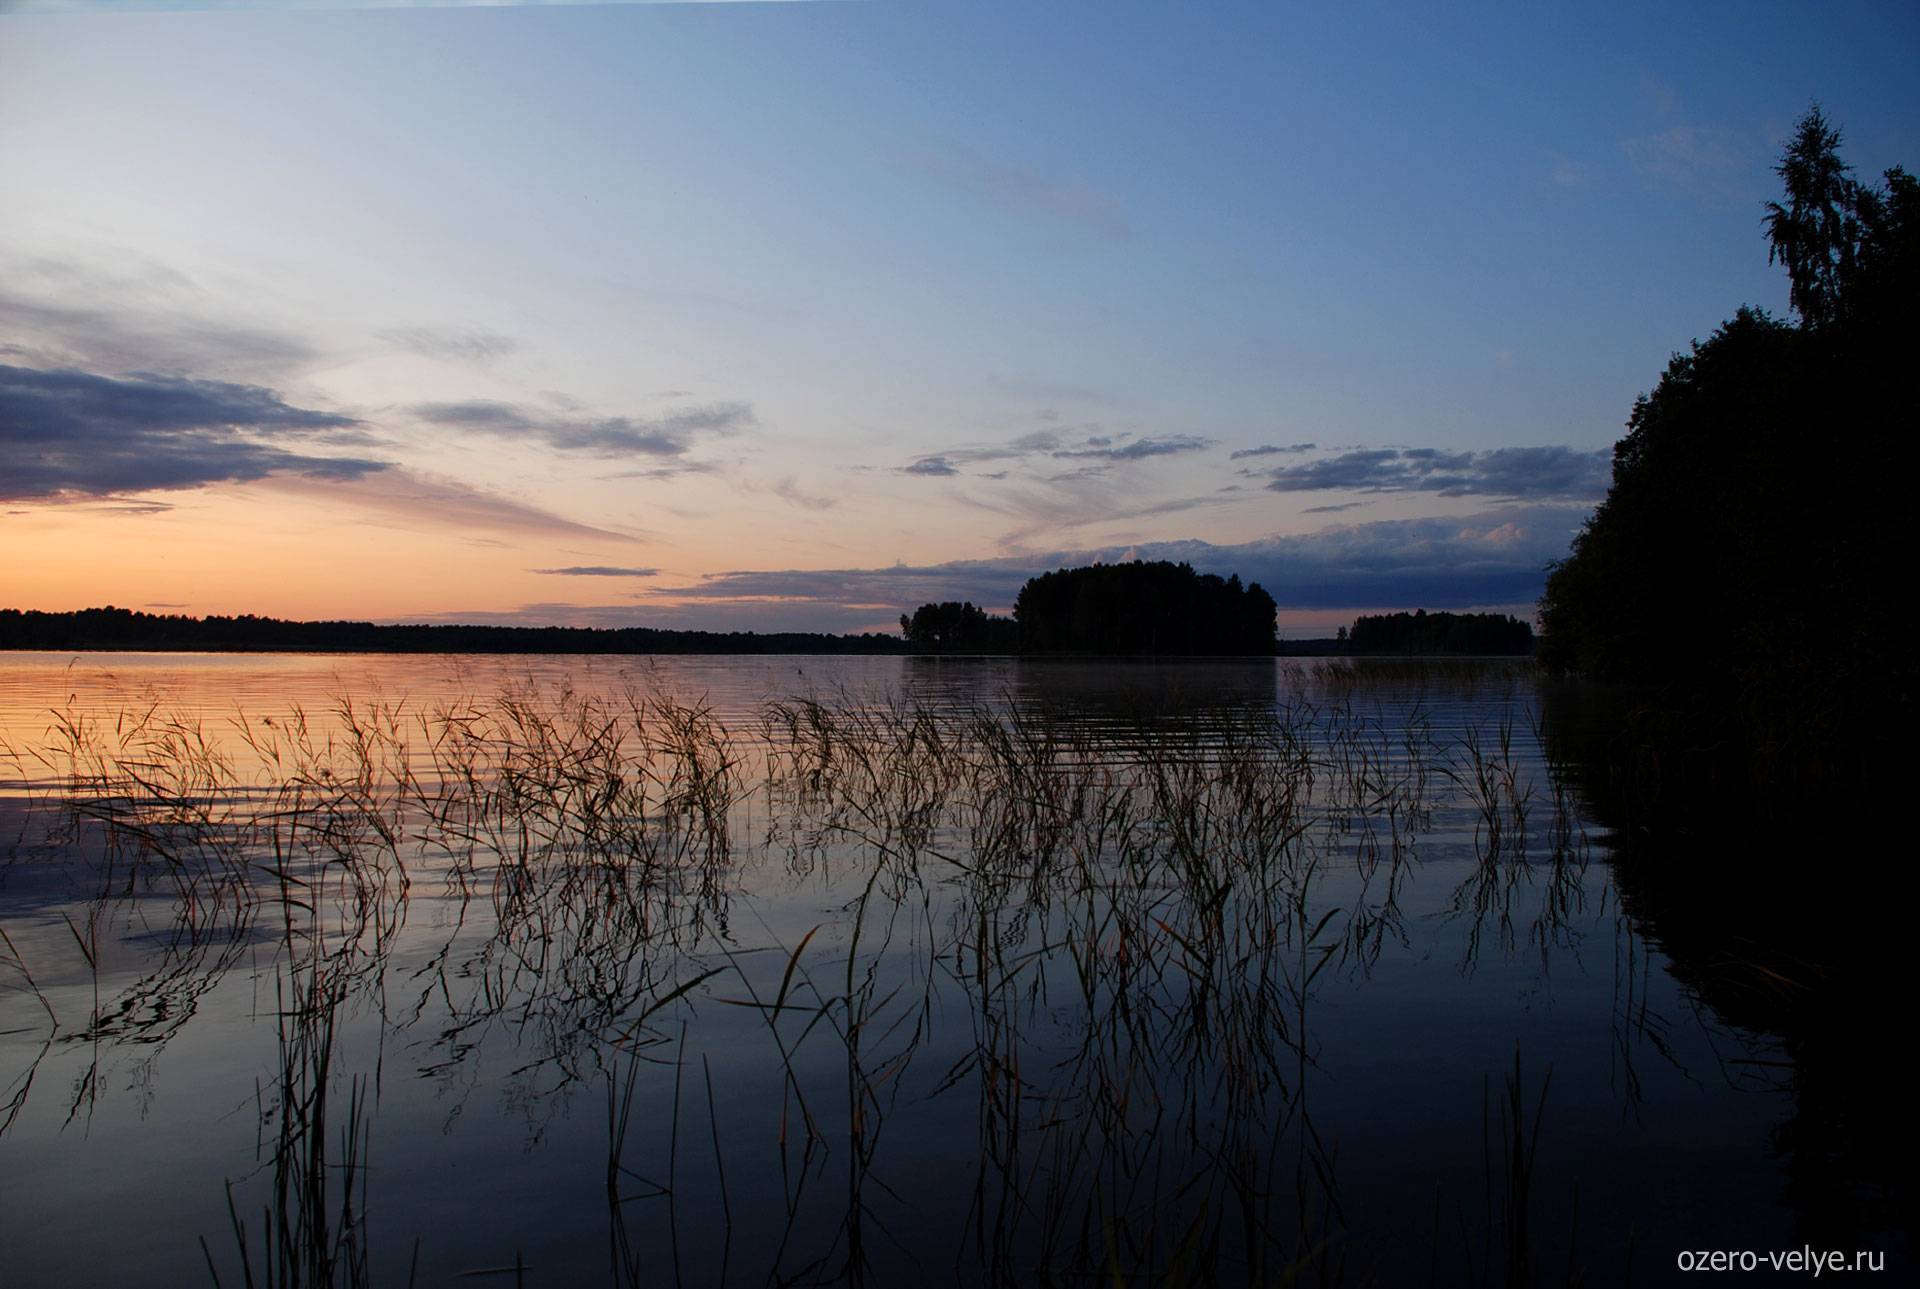 Озеро вельё — место для рыбака